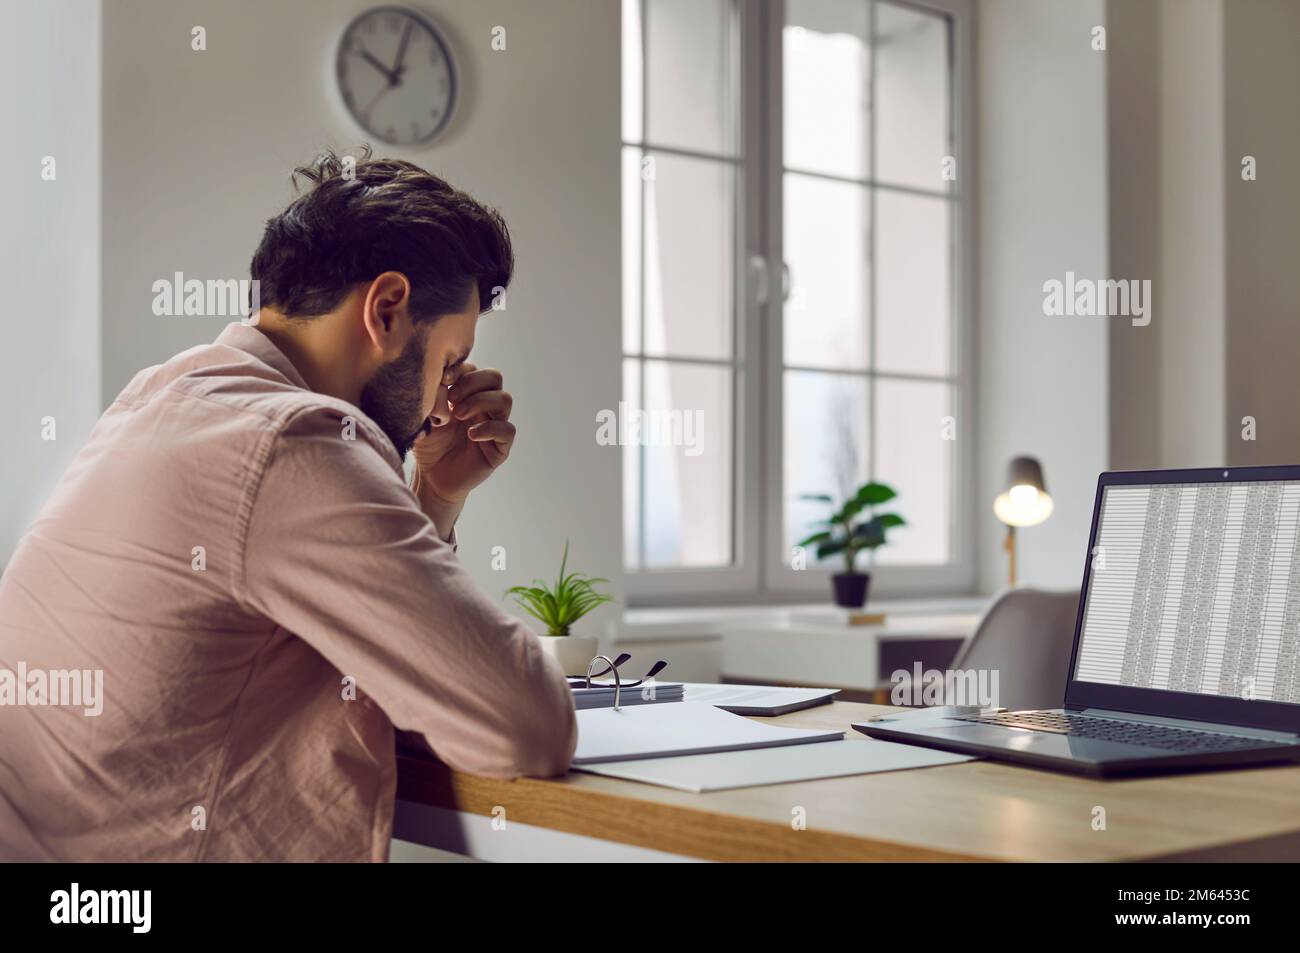 Homme fatigué, stressé, mal de tête assis à son bureau avec un ordinateur portable Banque D'Images